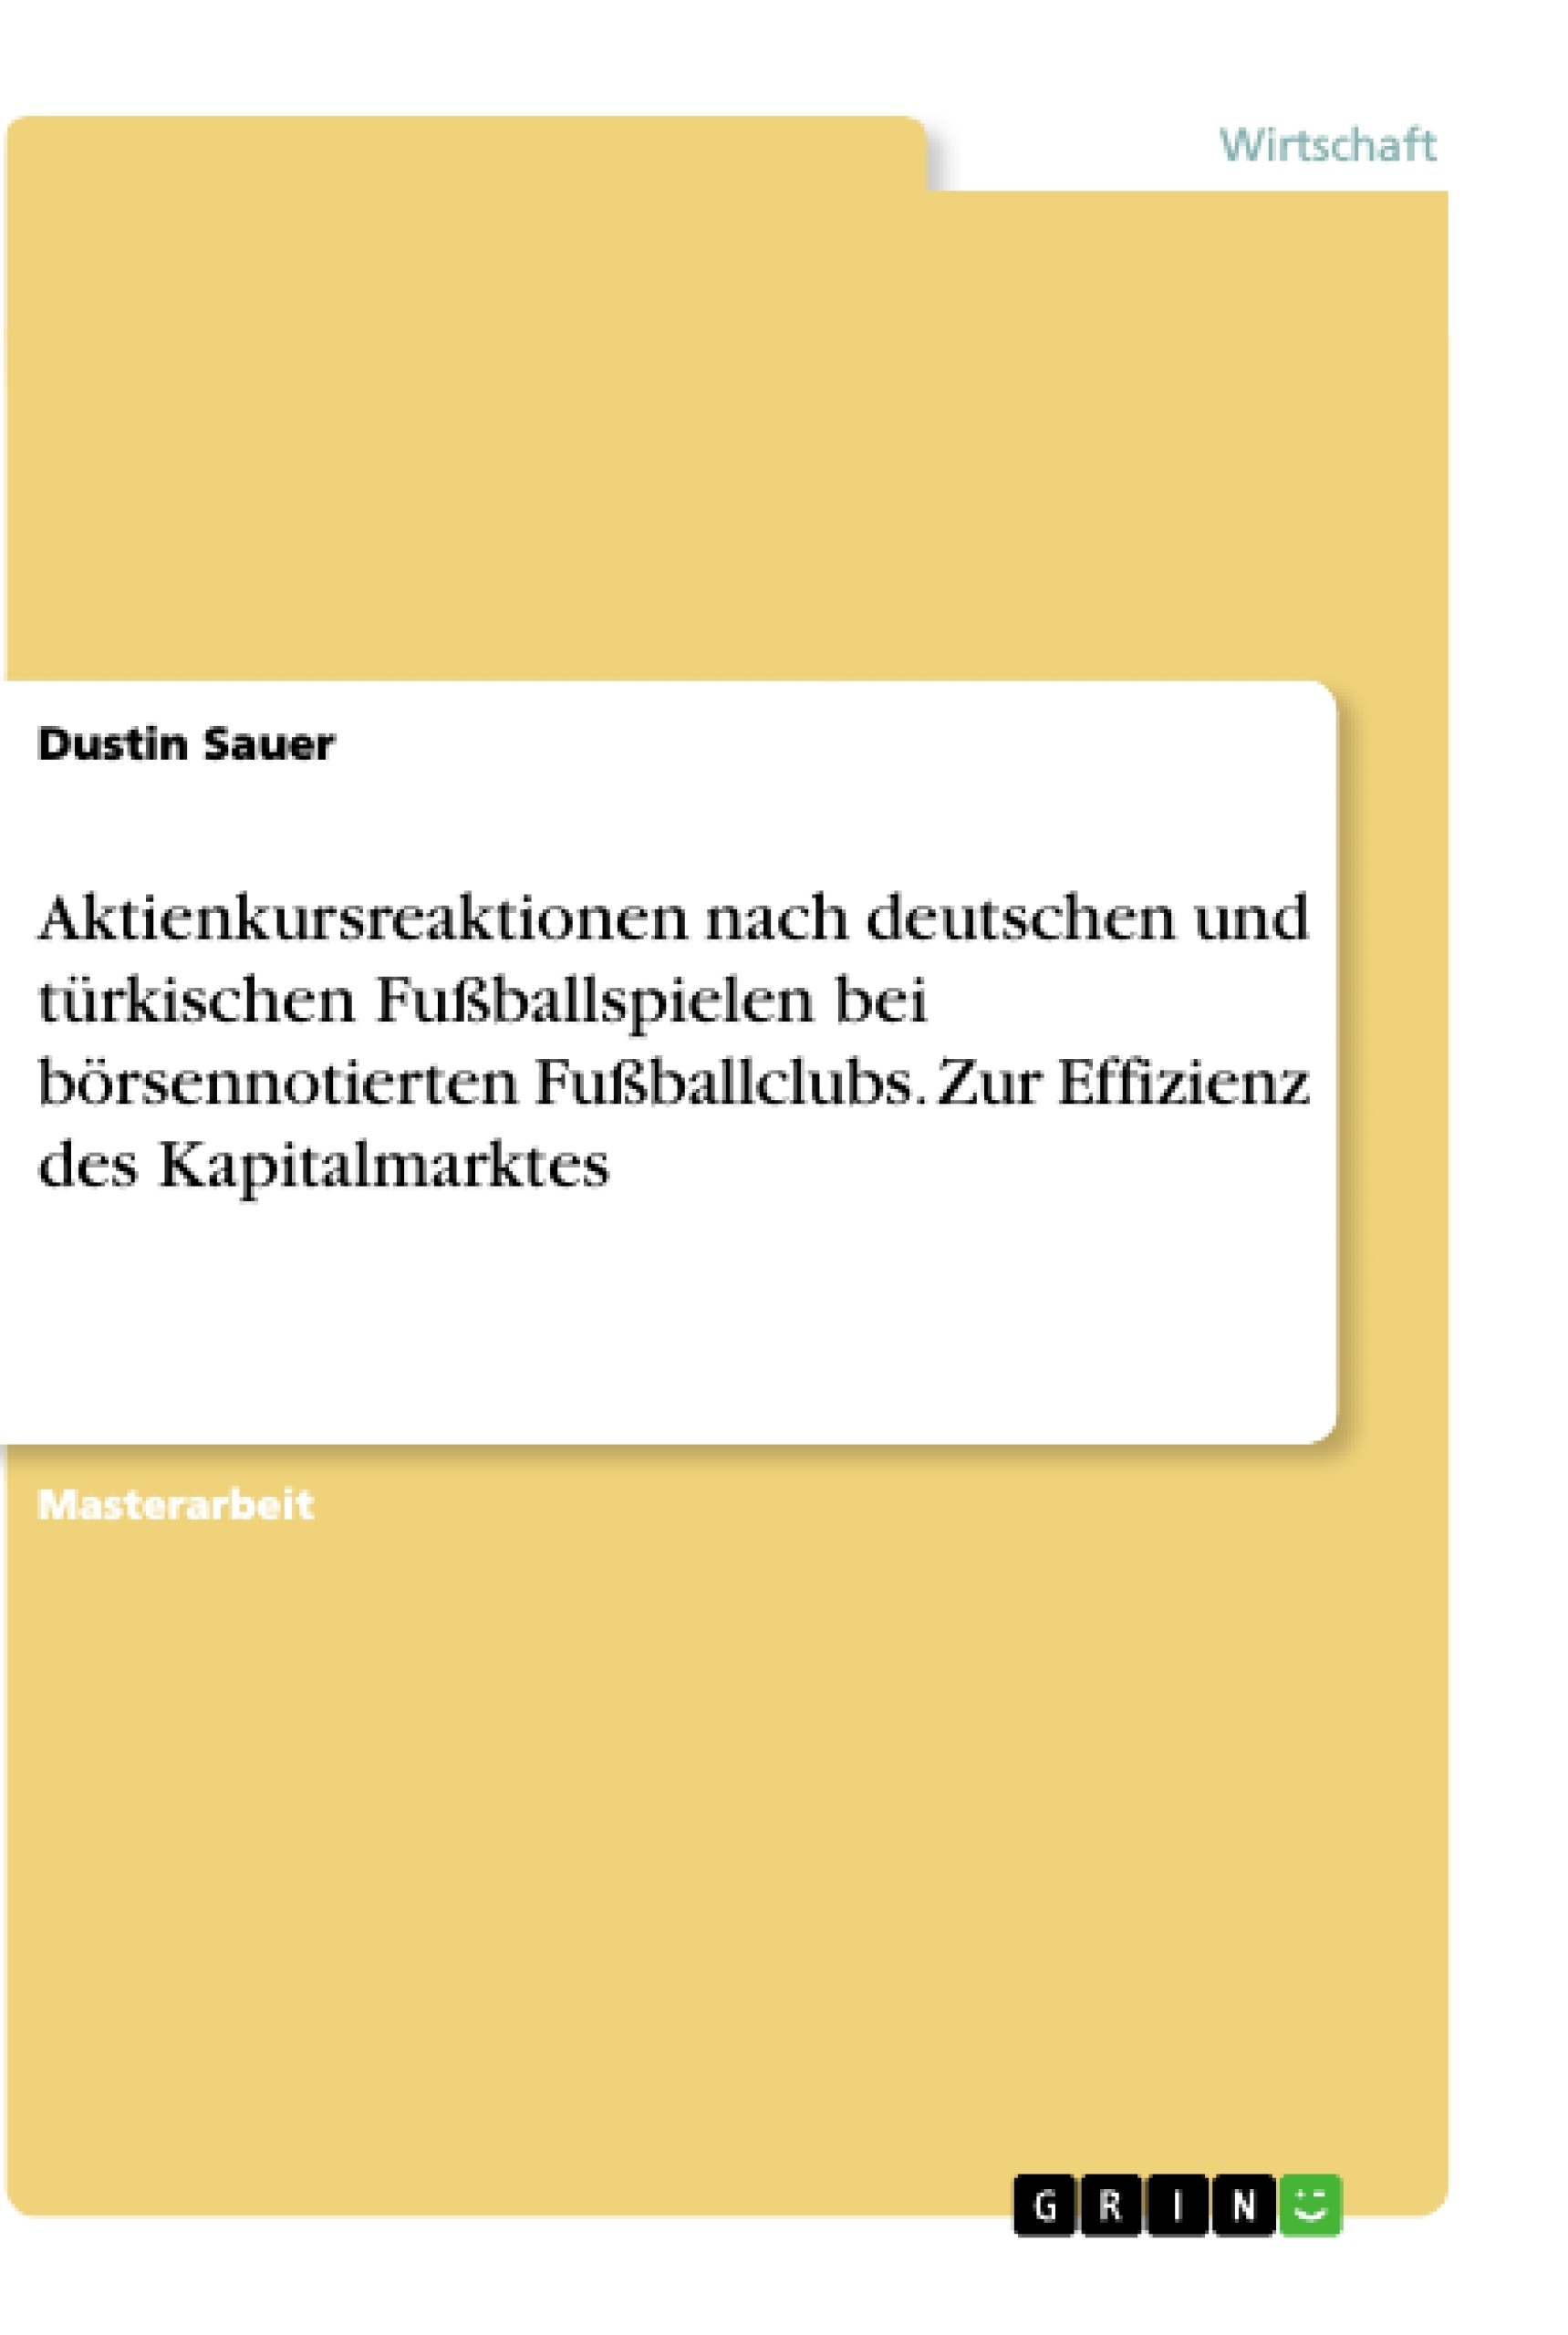 Título: Aktienkursreaktionen nach deutschen und türkischen Fußballspielen bei börsennotierten Fußballclubs. Zur Effizienz des Kapitalmarktes